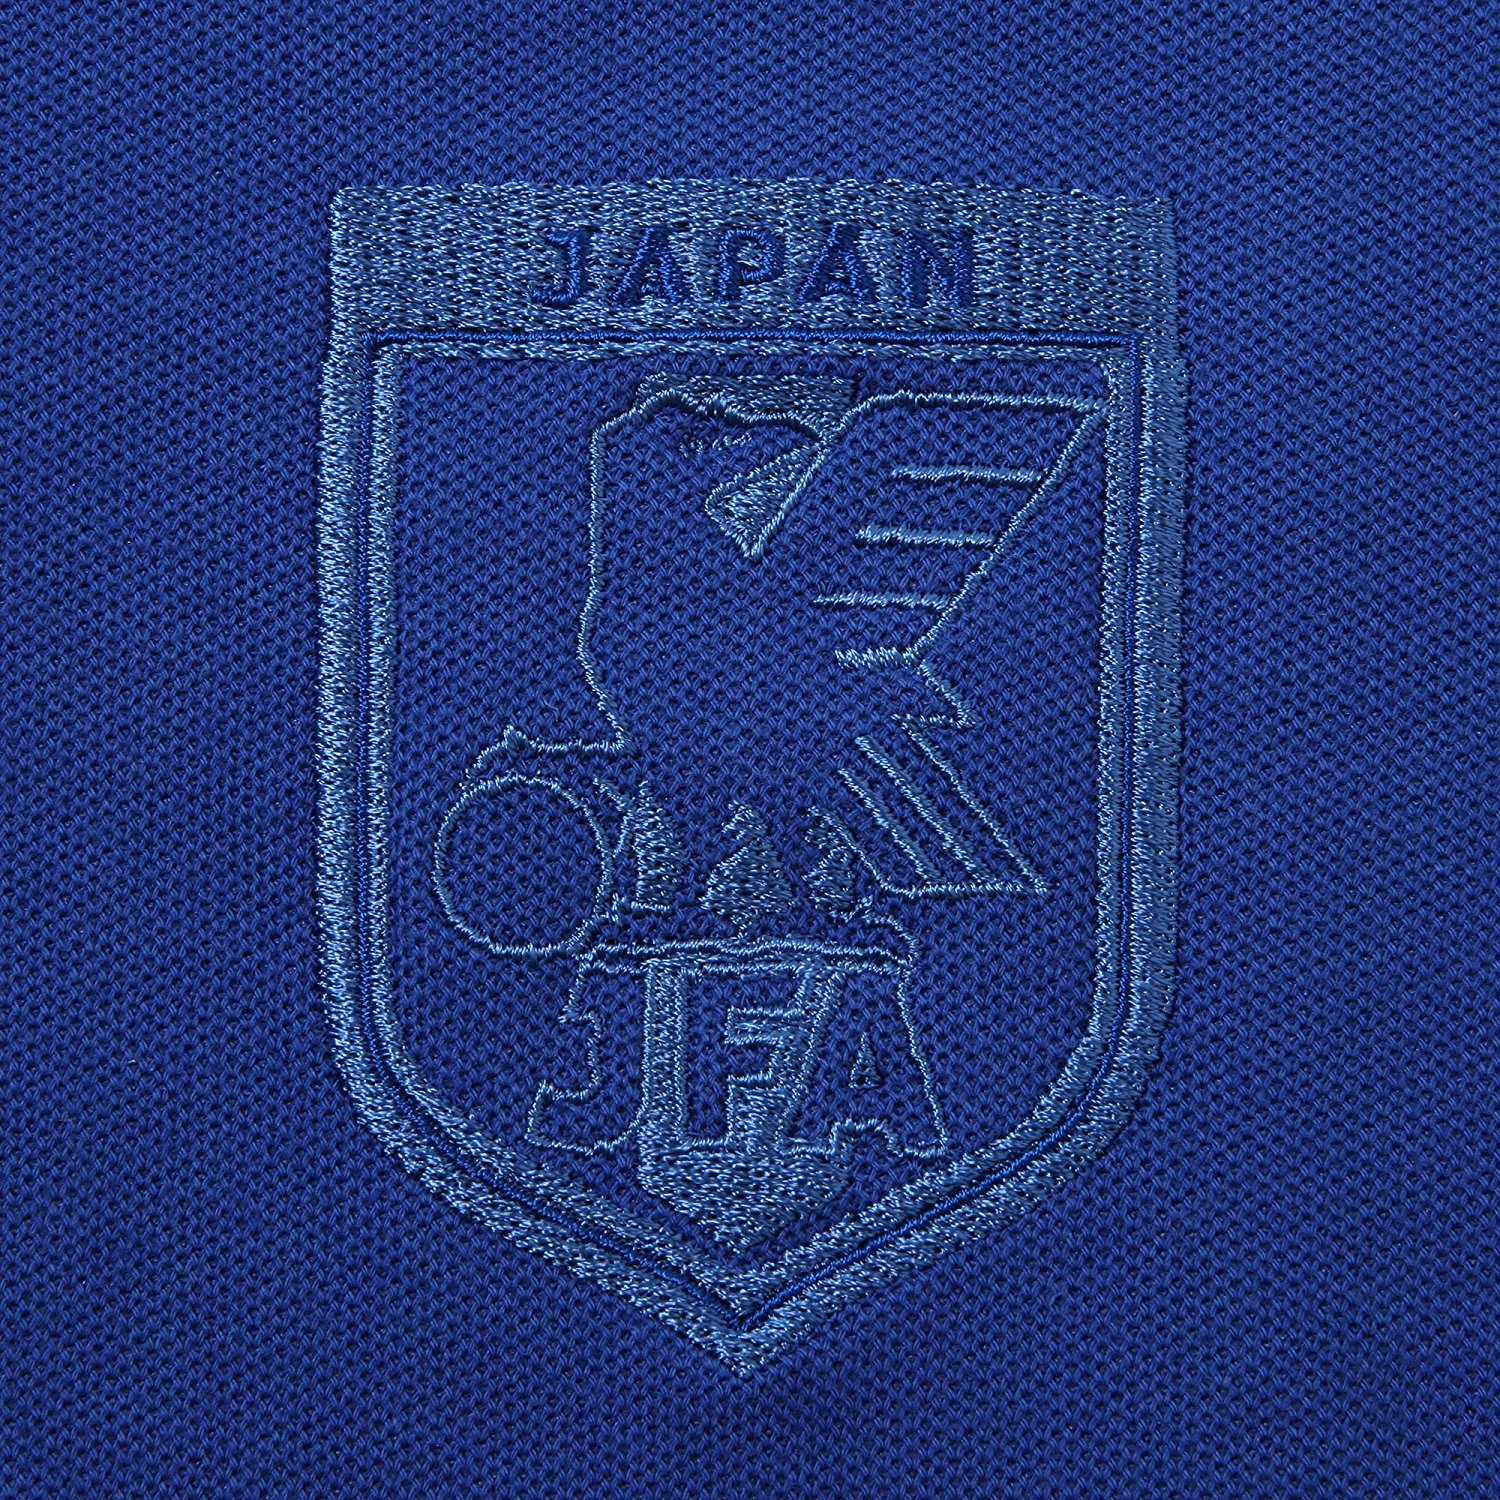 【JFA】 サッカー日本代表 2018年 ポロシャツ(ライン) ブルー